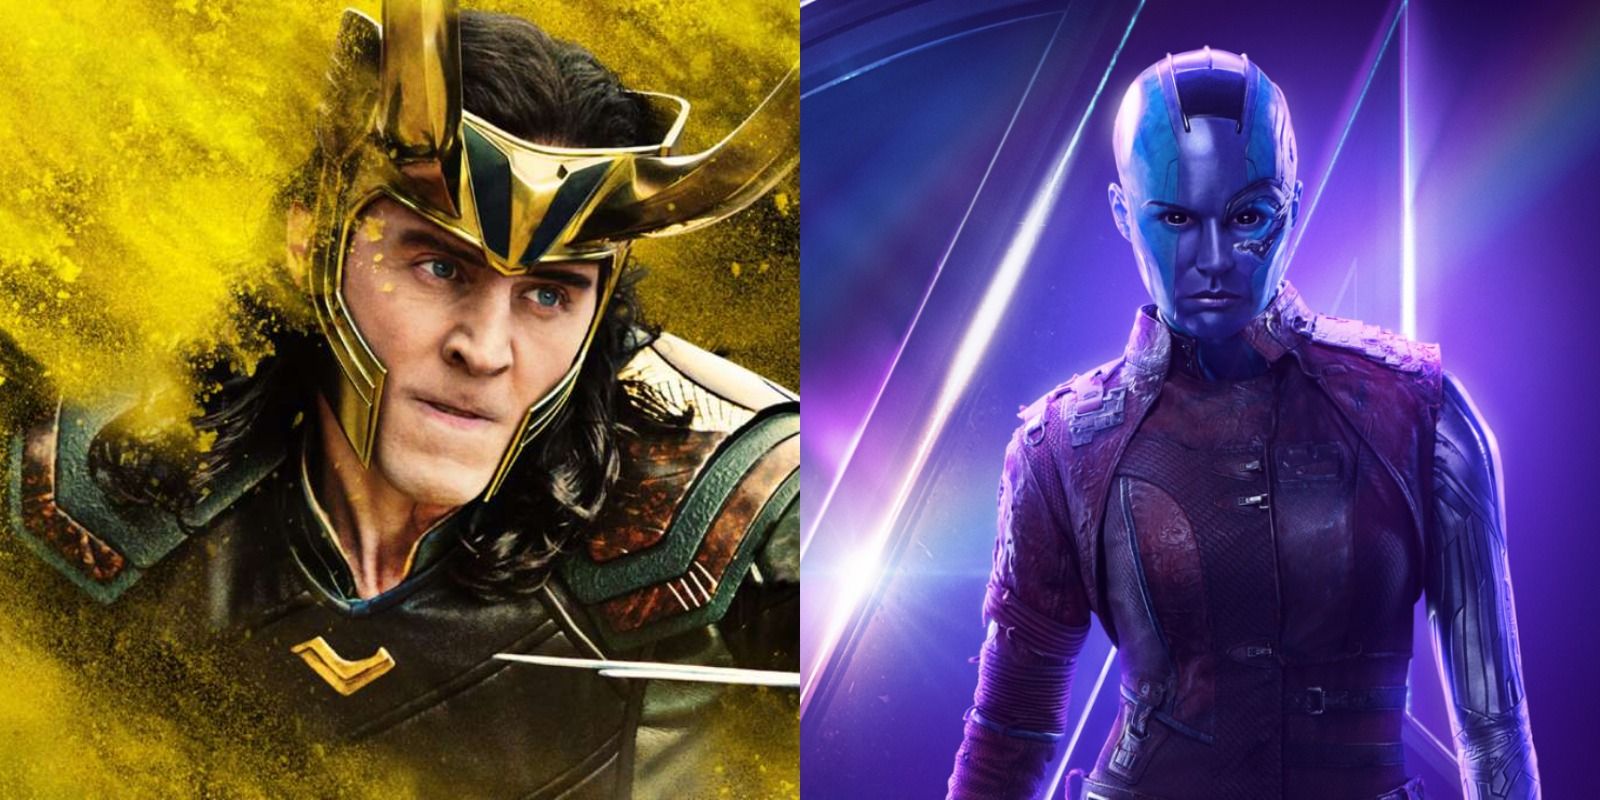 Split image of Loki from Thor: Ragnarok and Nebula from Avengers: Endgame